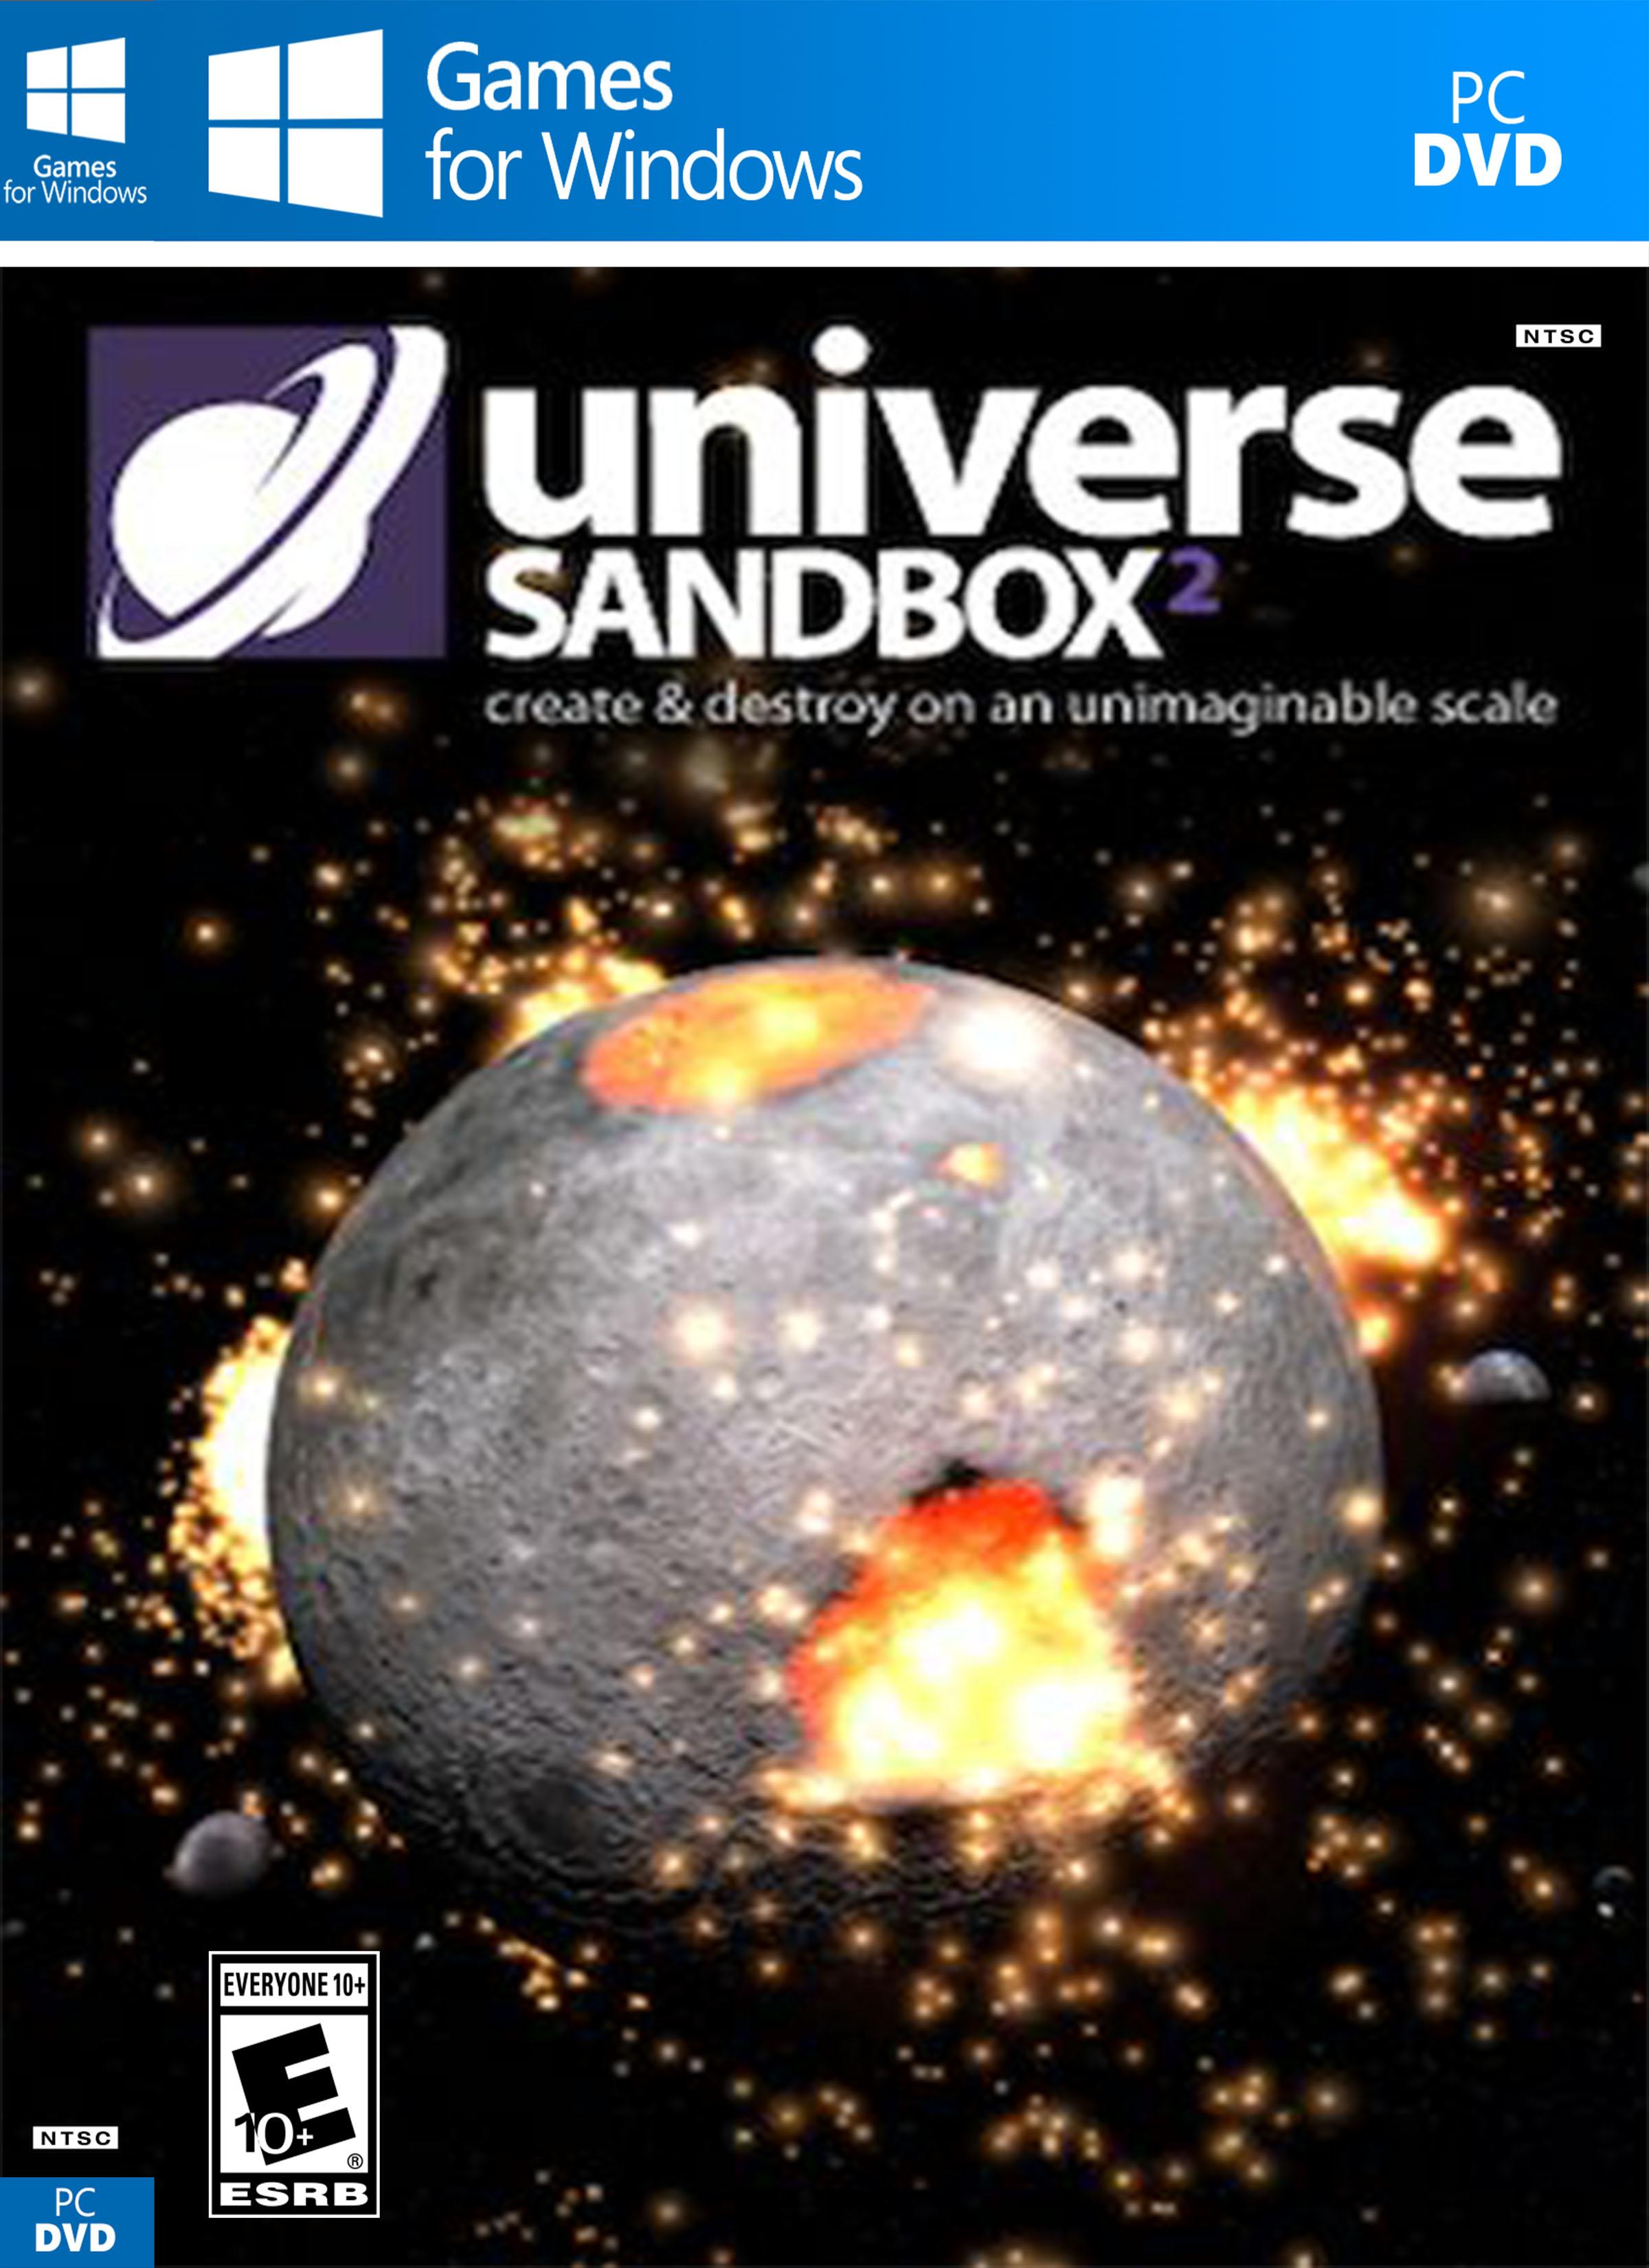 universe sandbox 2 free download pc